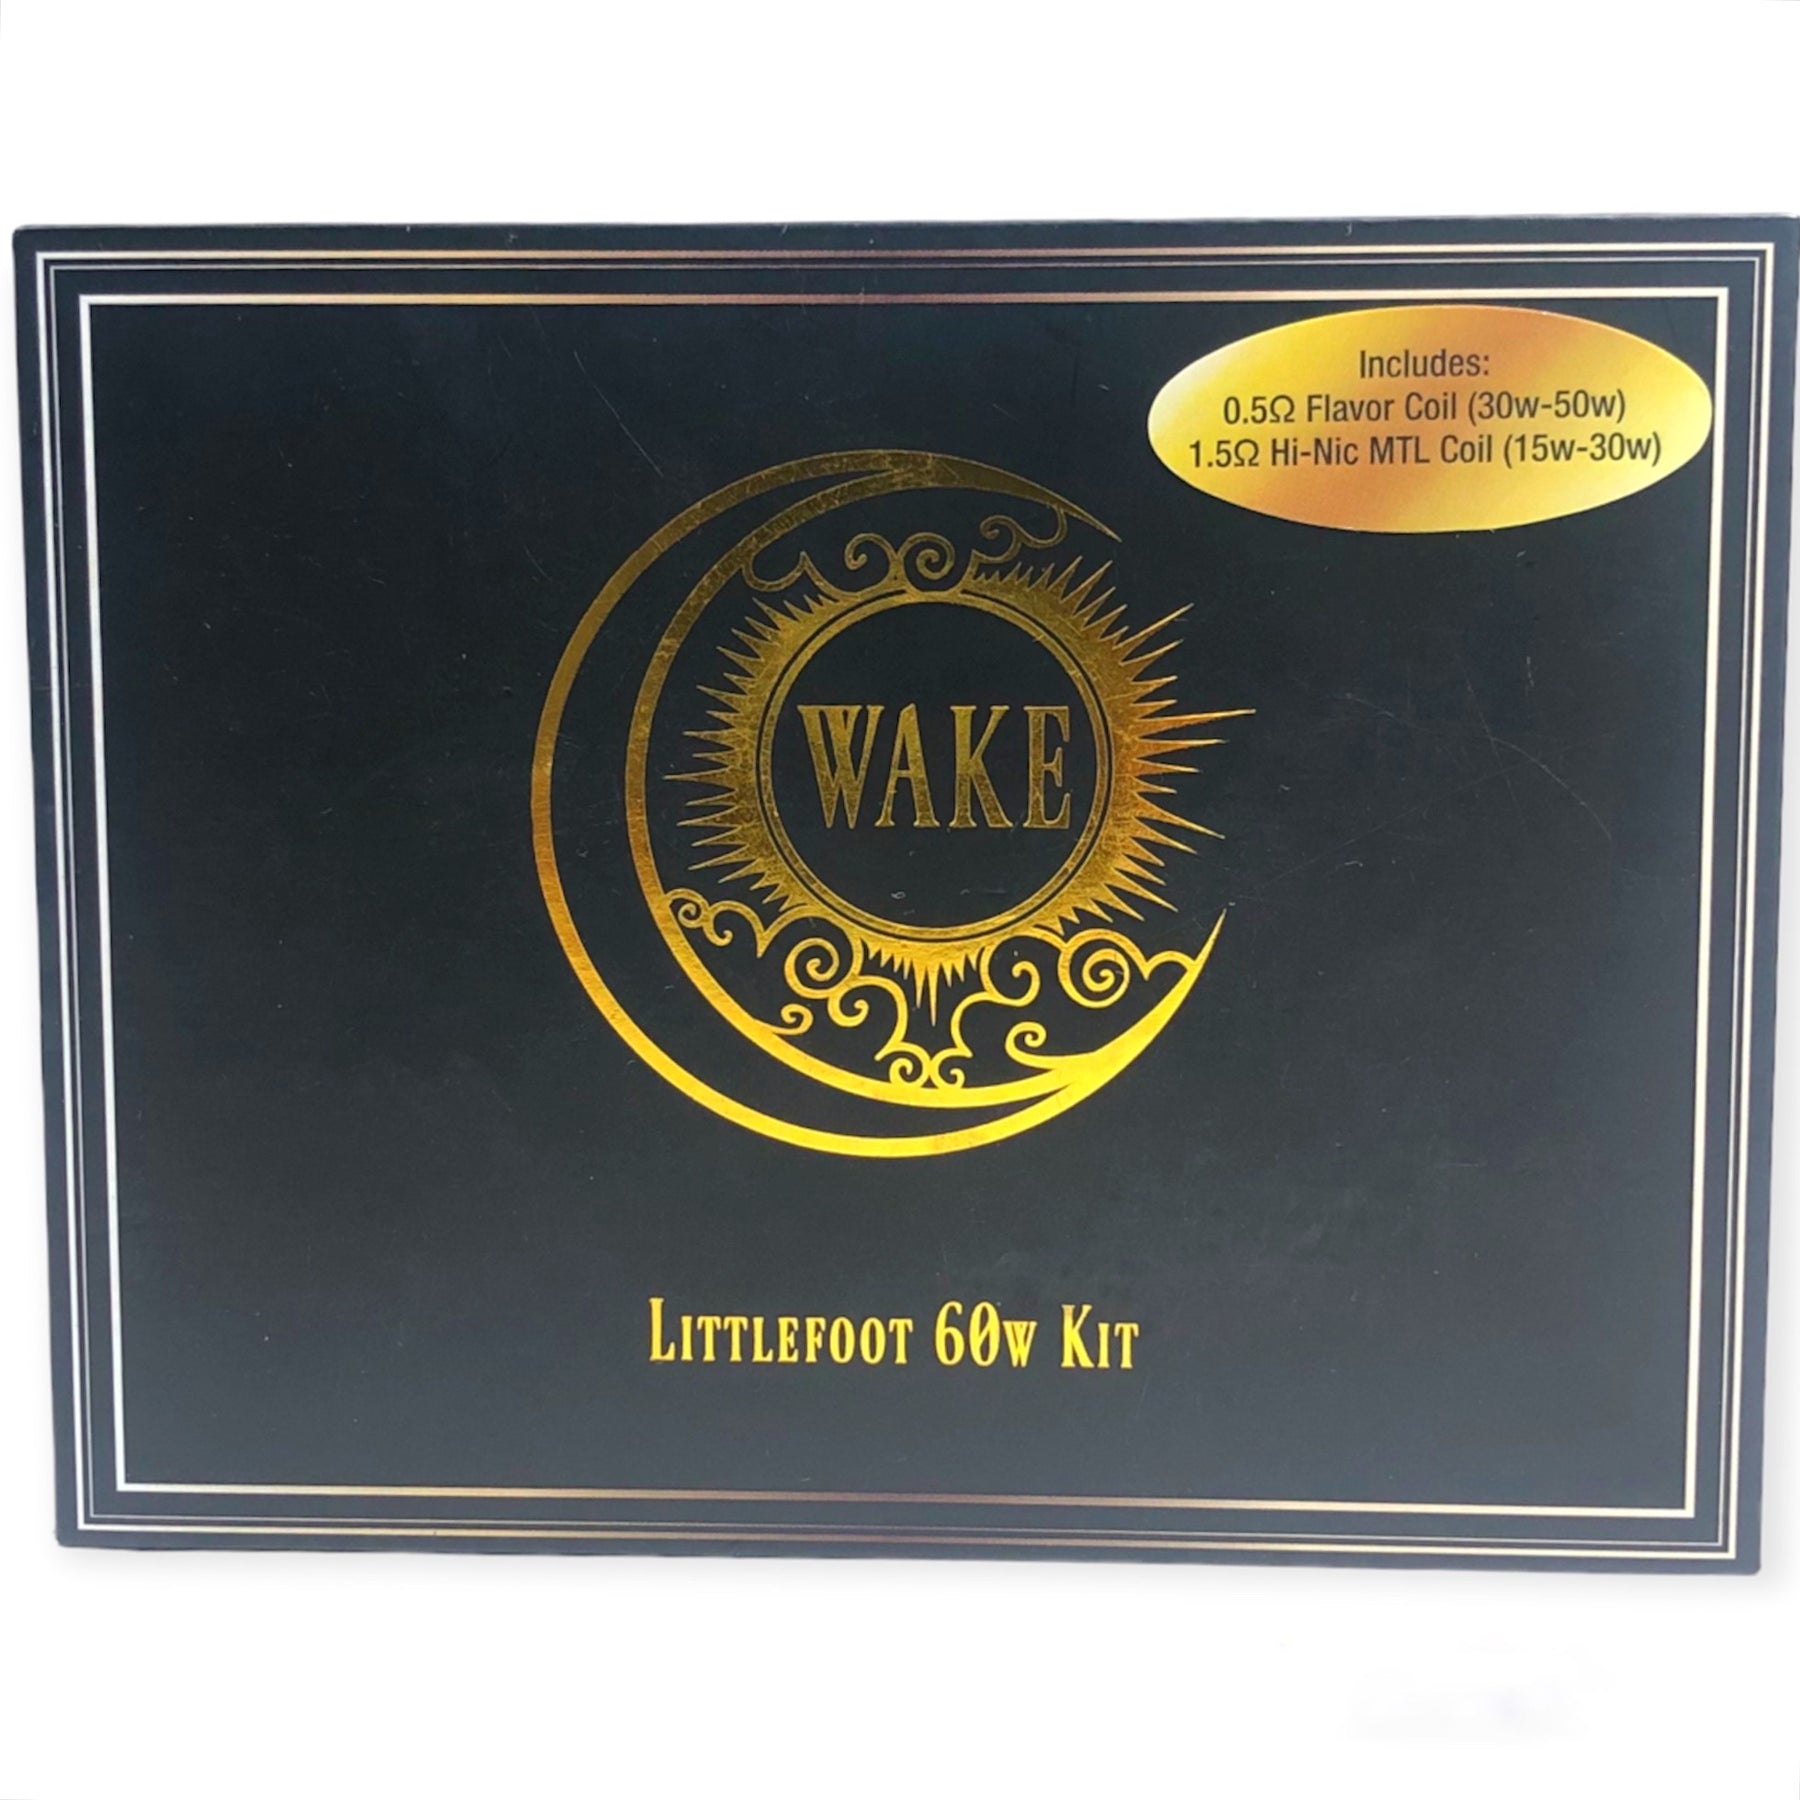 公式店舗電子タバコ WAKE LF 60w kit 喫煙具・ライター